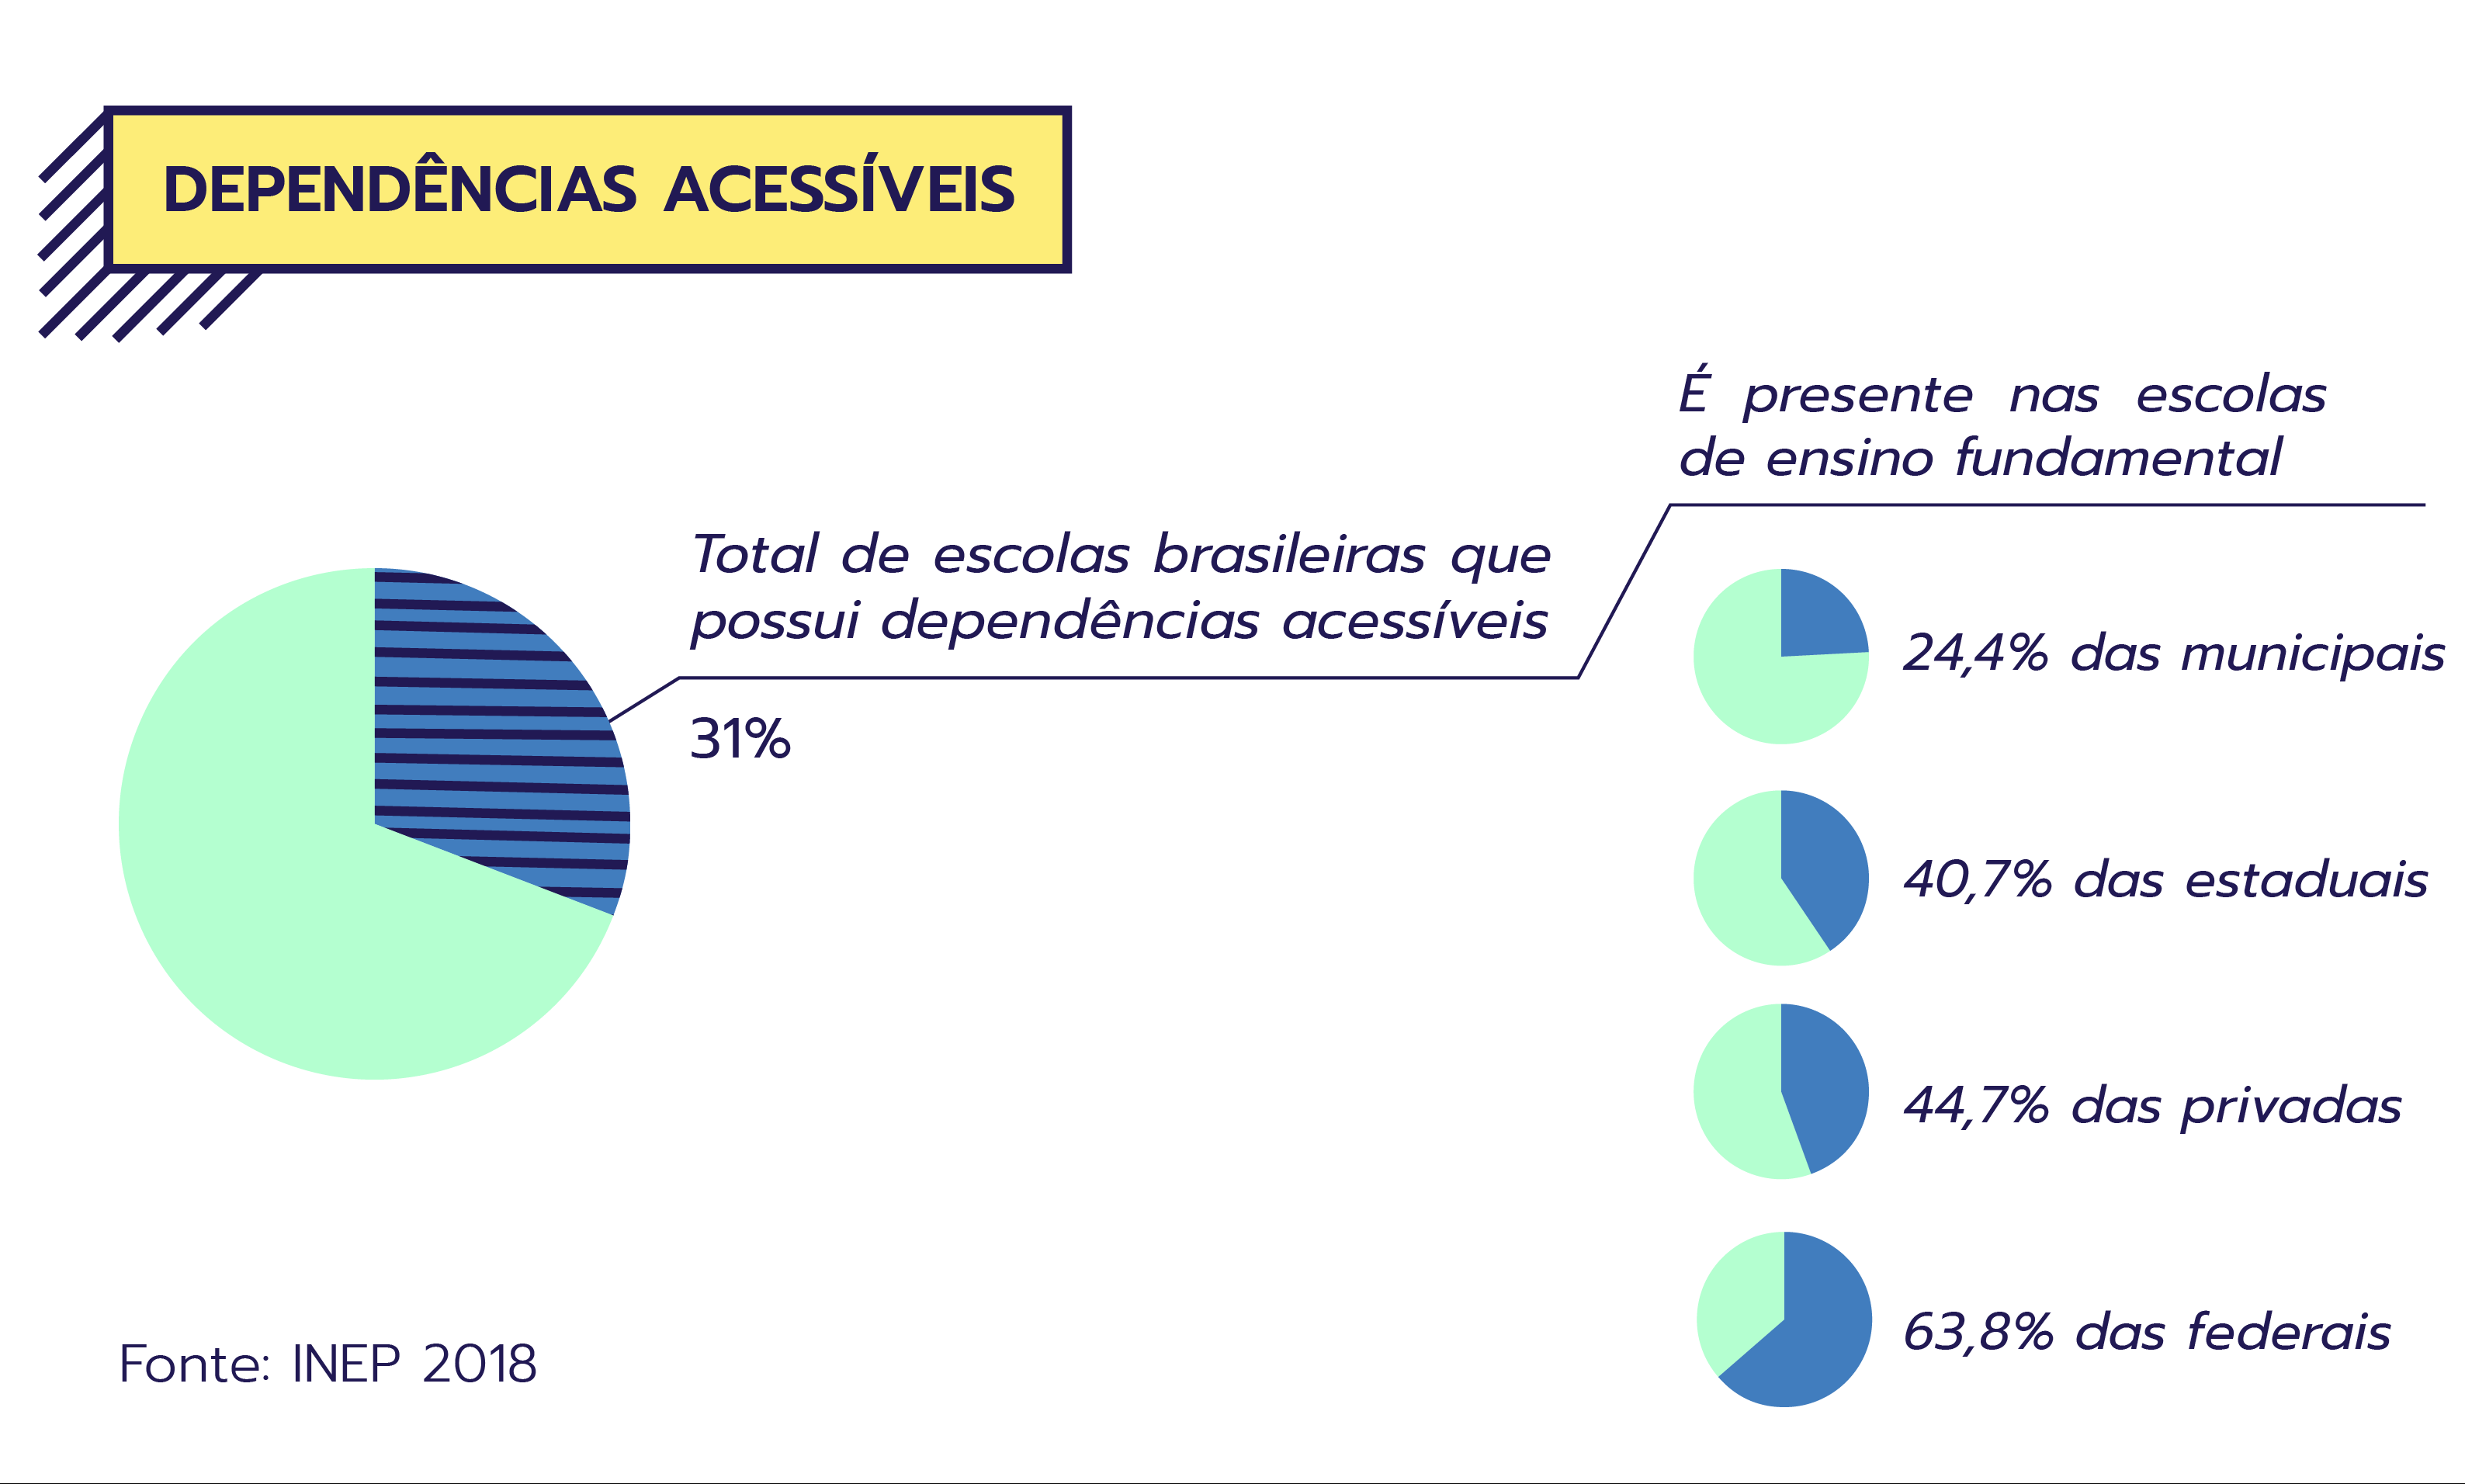 Infográfico sobre dependências acessíveis. Estão presentes em 31% de todas as escolas brasileiras. Entre as escolas de Ensino Fundamental, estão em 24,4% das municipais, 40,7% das estaduais, 44,7% das privadas e 63,8% das federais.